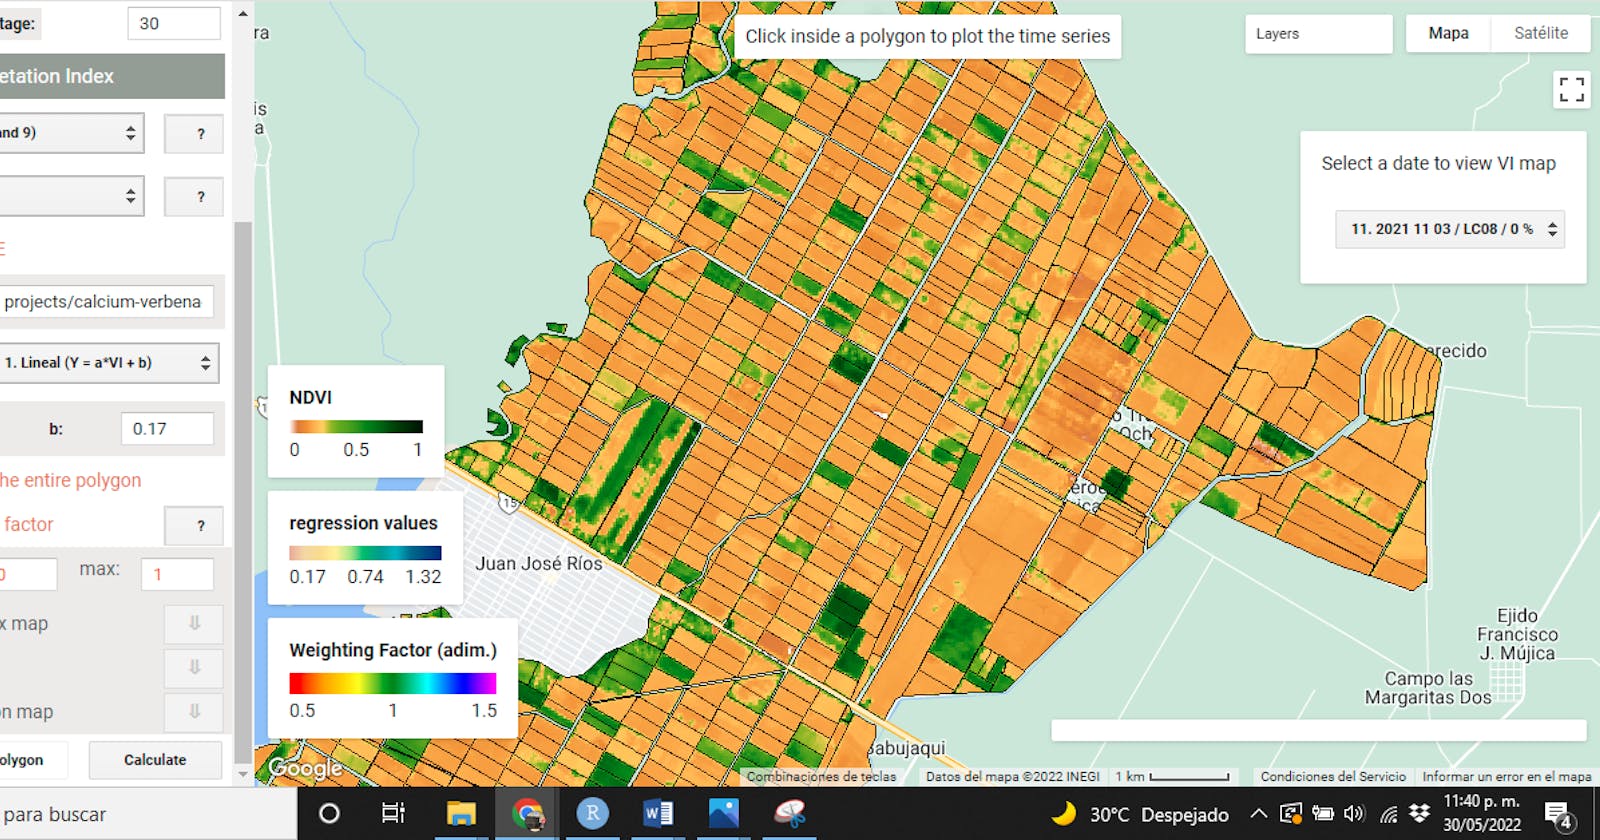 Calcular 23 índices de vegetación usados en agricultura con imagenes Landsat y Sentinel